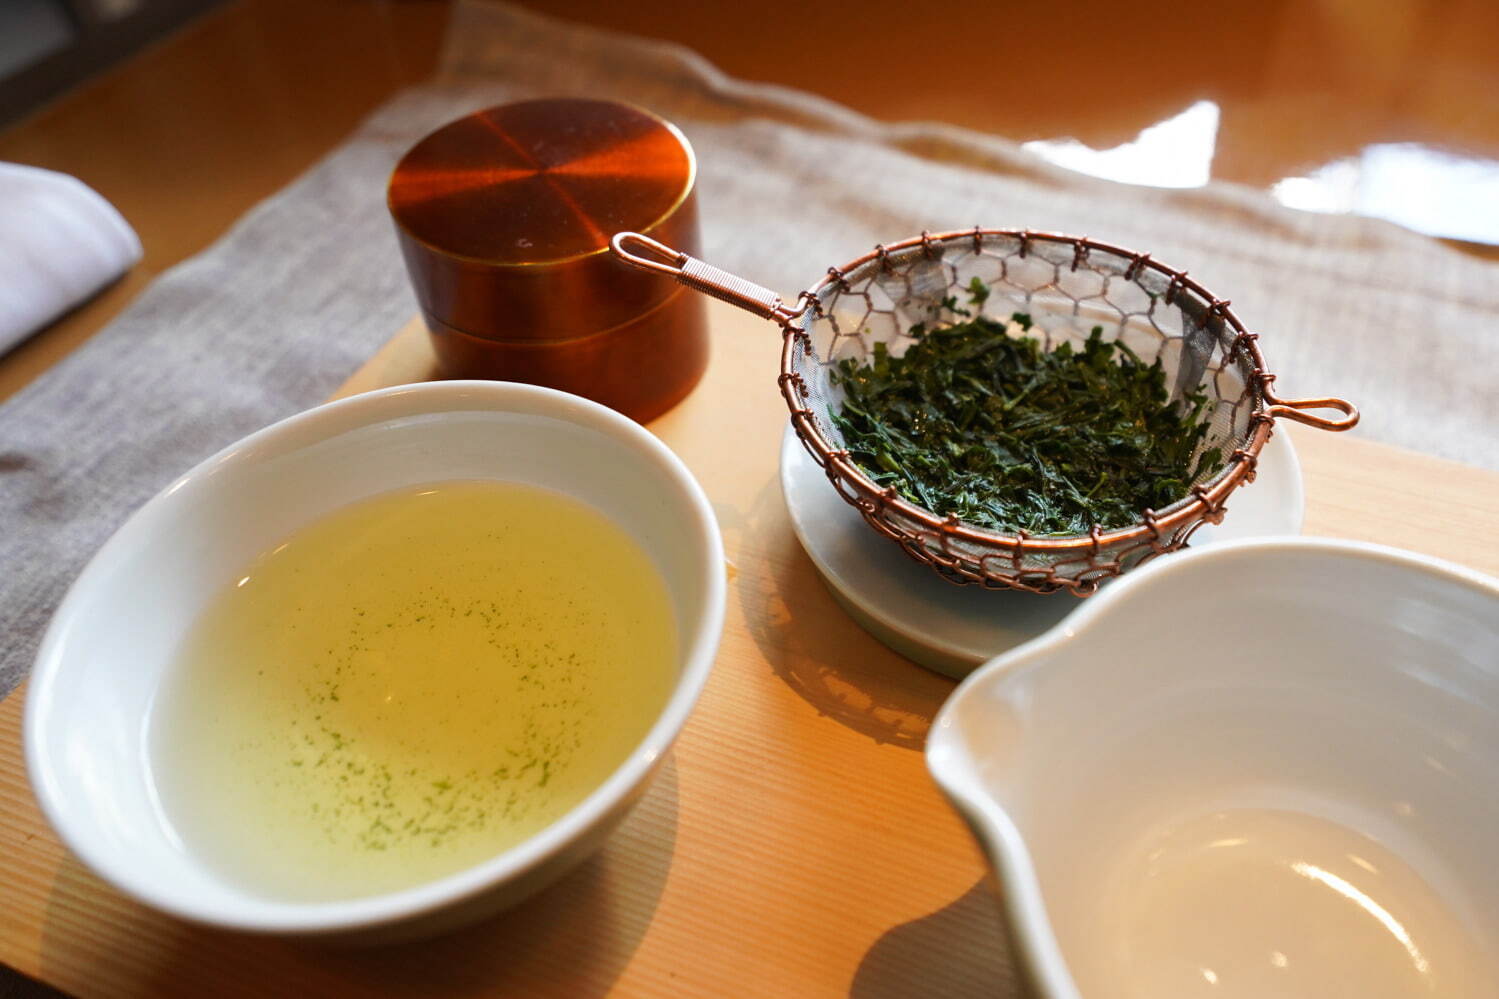 ティートレイは「中川木工芸」、青磁のティーポットと煎茶碗は「茶陶朝日焼」、真鍮の茶筒は「開化堂」、インフューザーは「金網つじ」のもの。